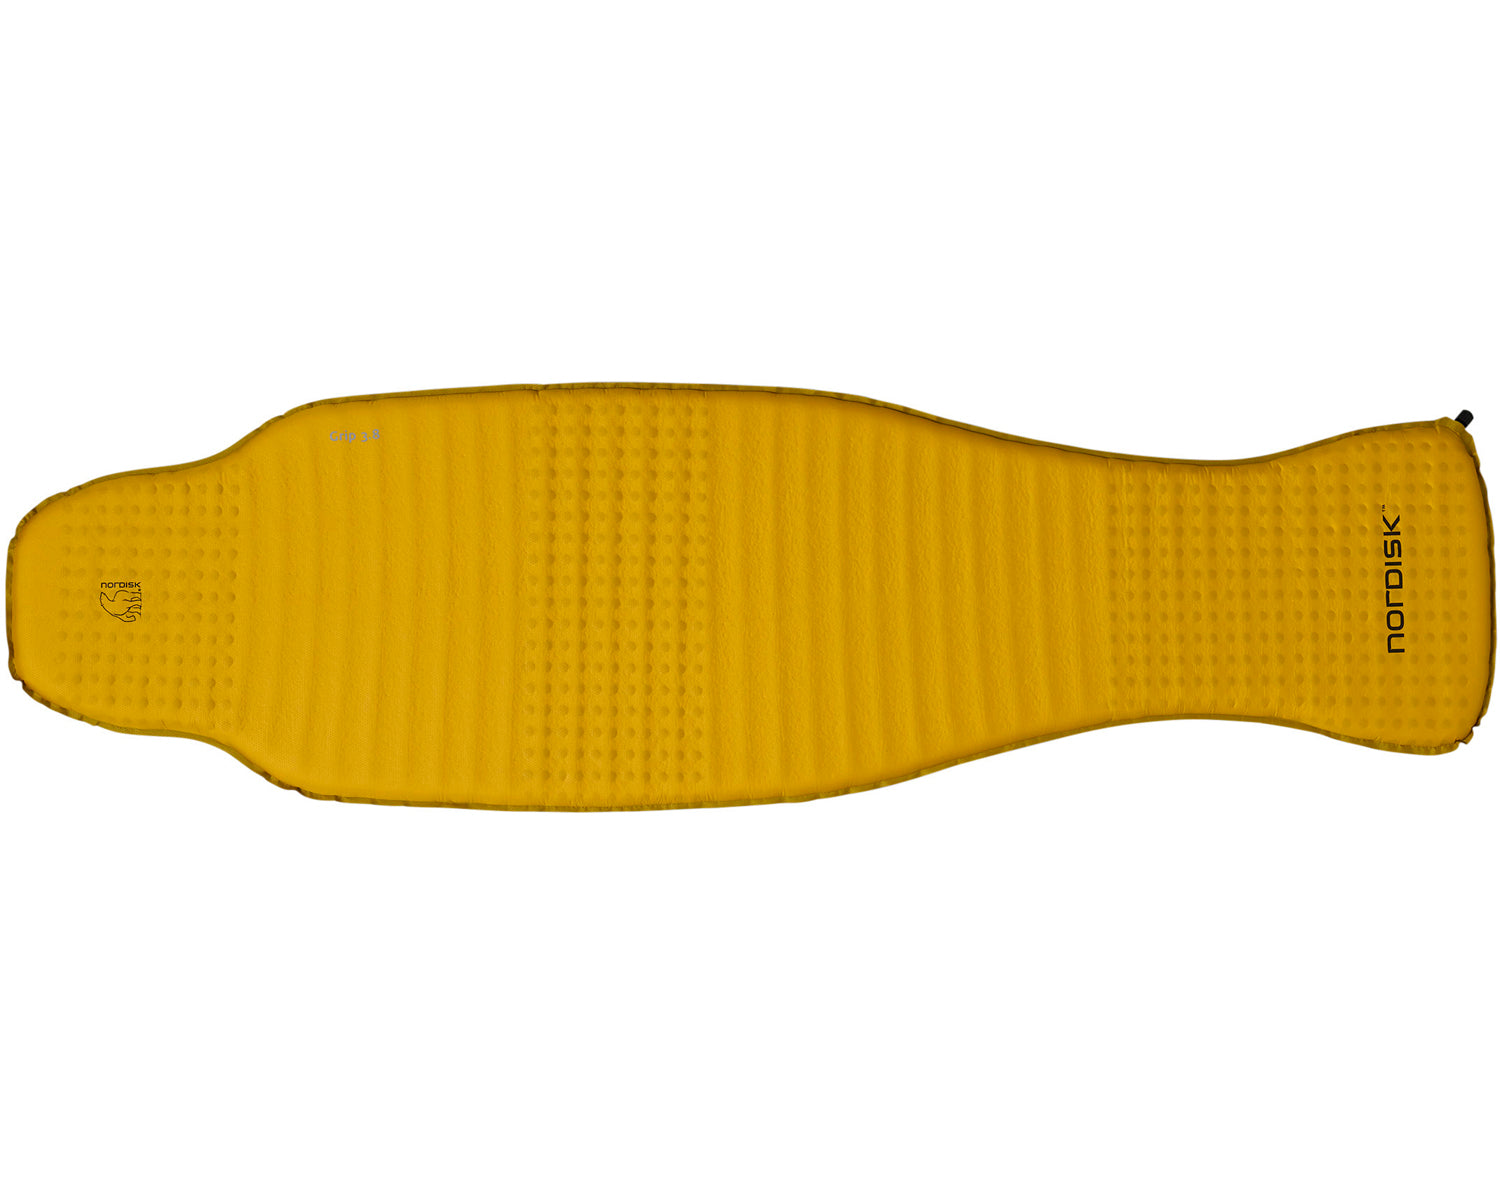 Grip 3.8 mat - Mustard Yellow